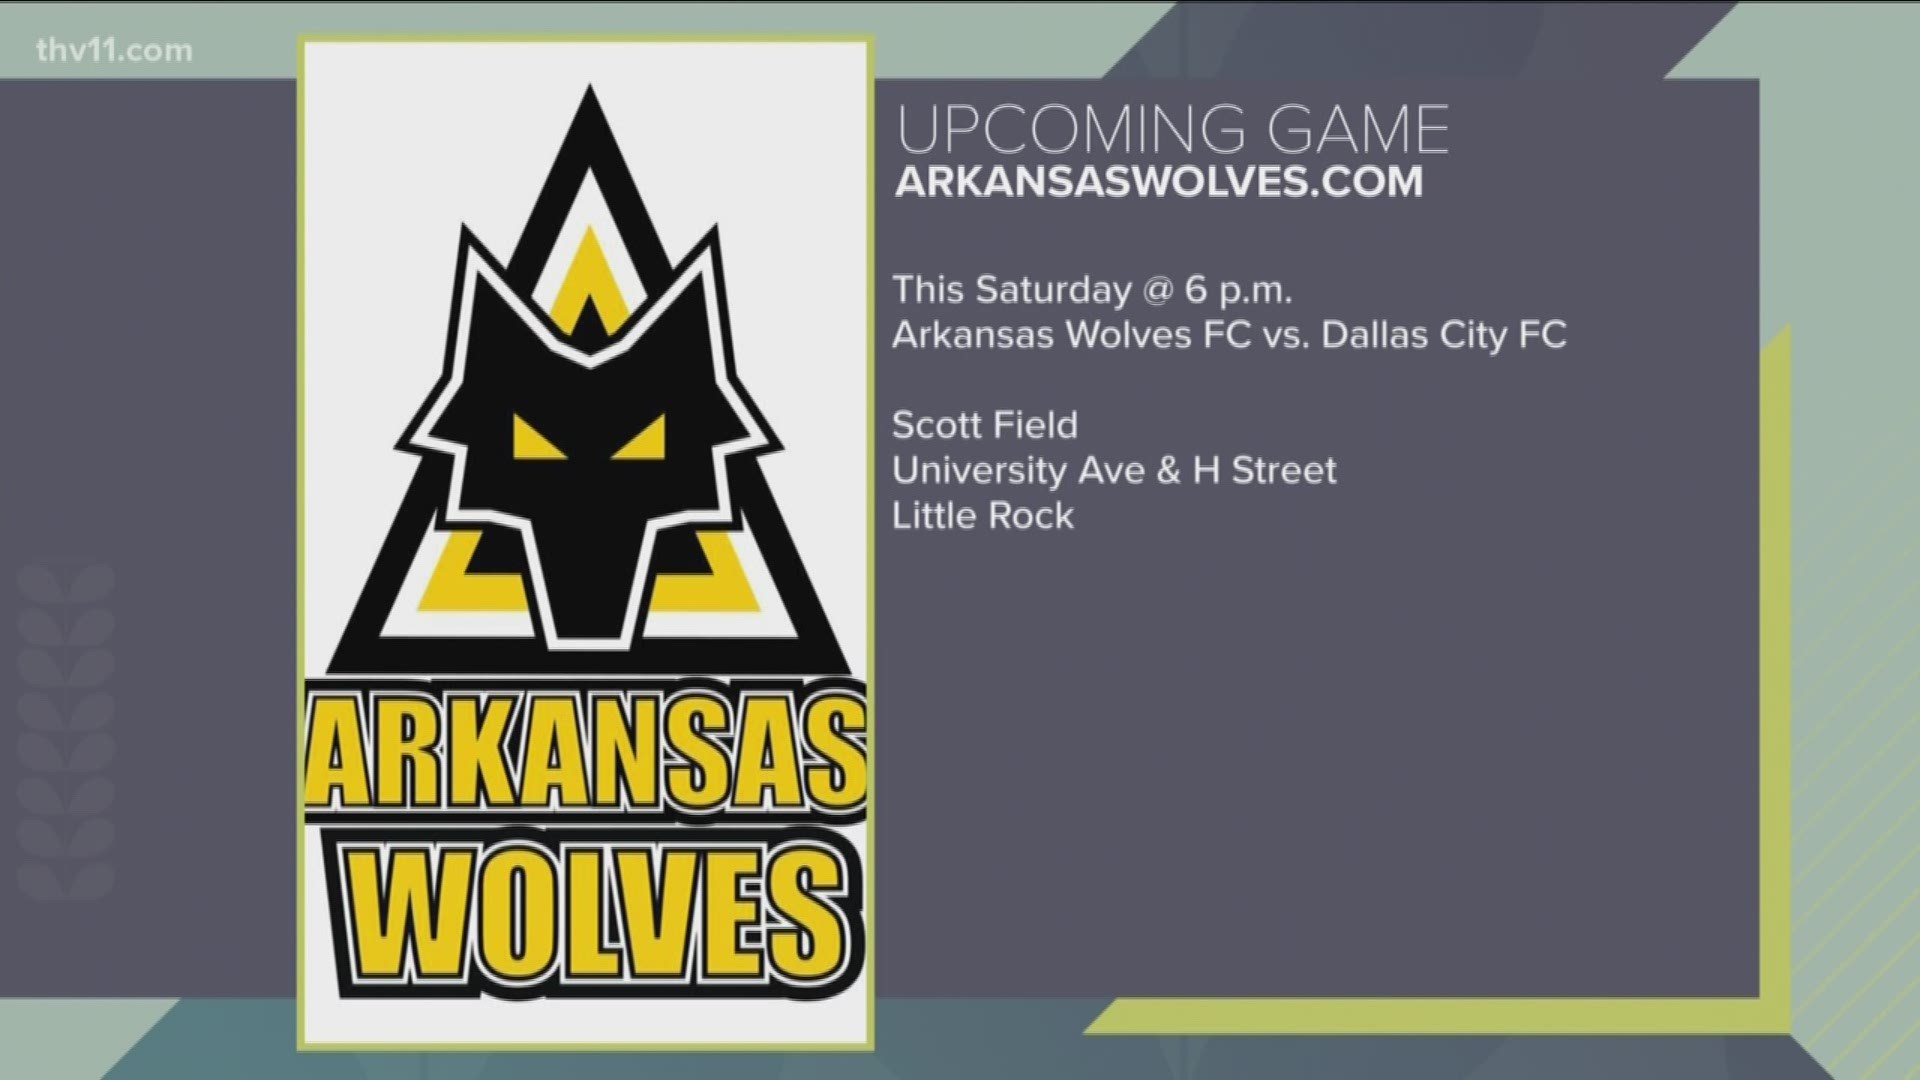 Arkansas Wolves Soccer club based in Little Rock.